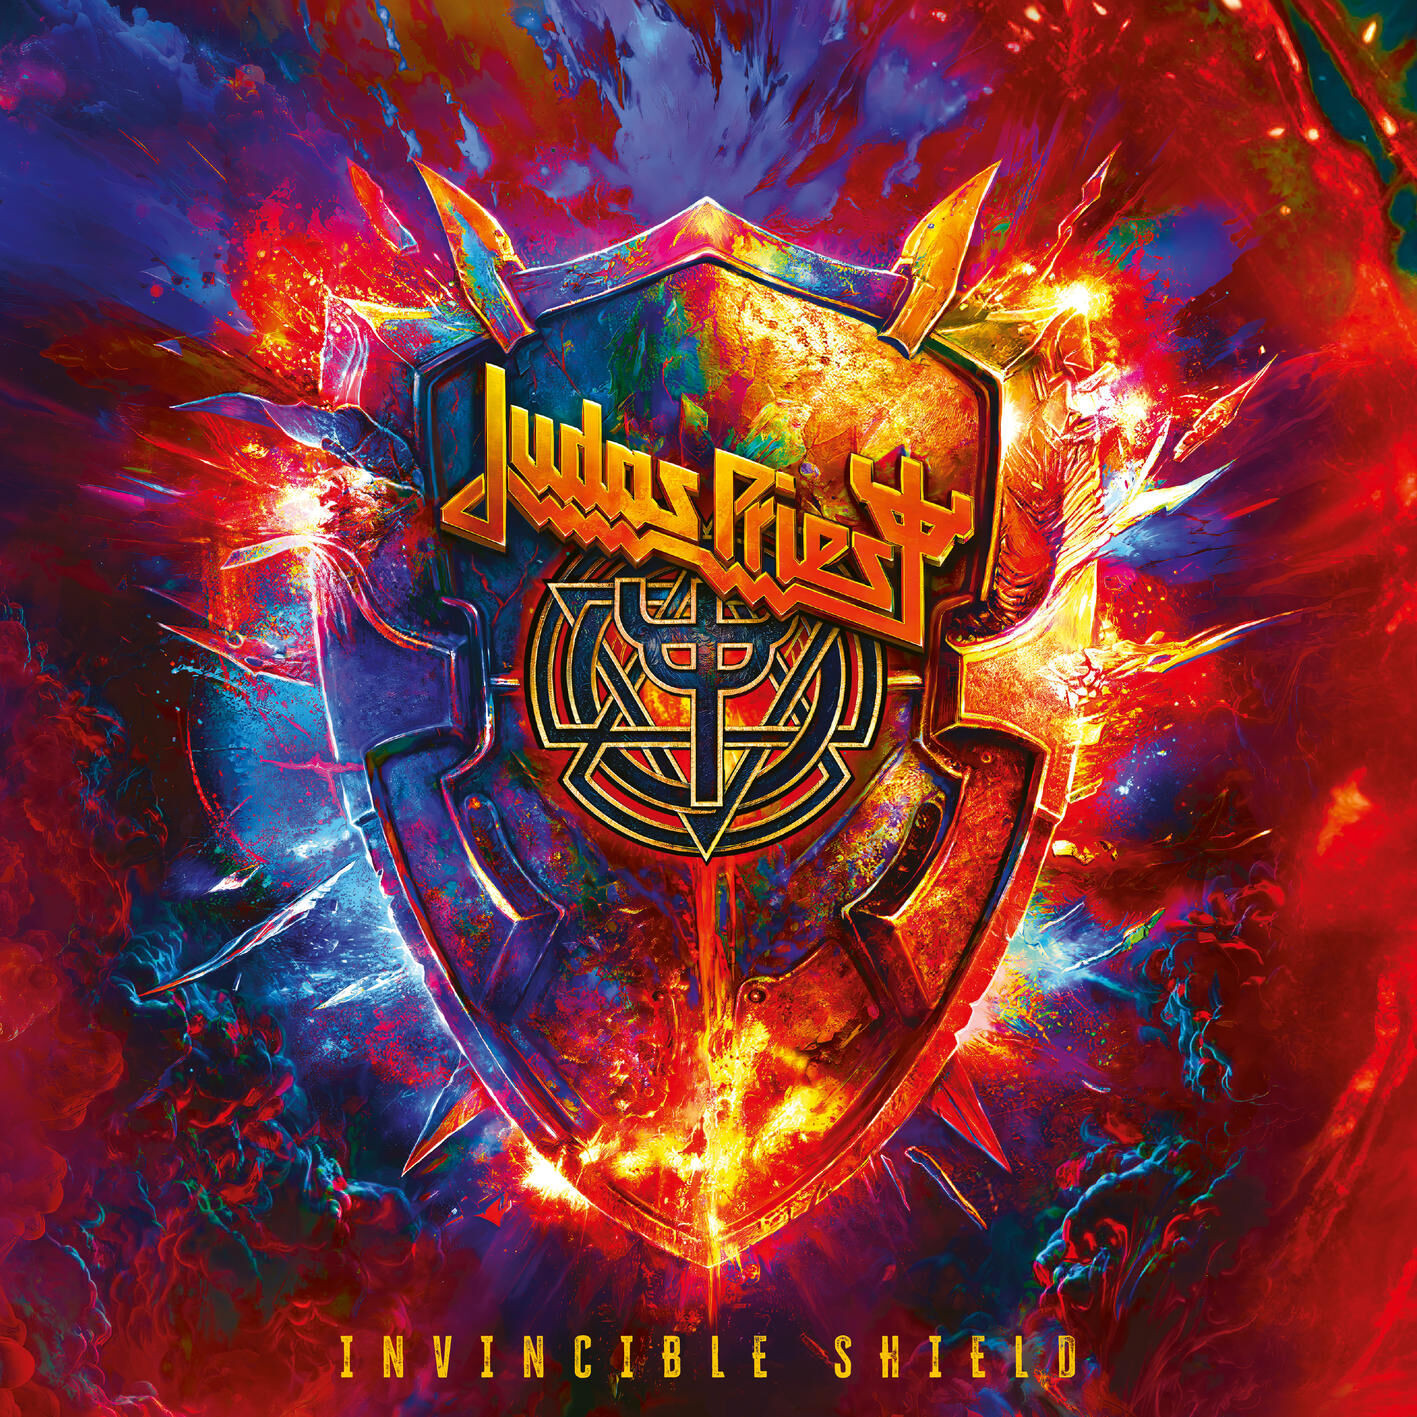 Впечатления от нового альбома Judas Priest «Invincible Shield»